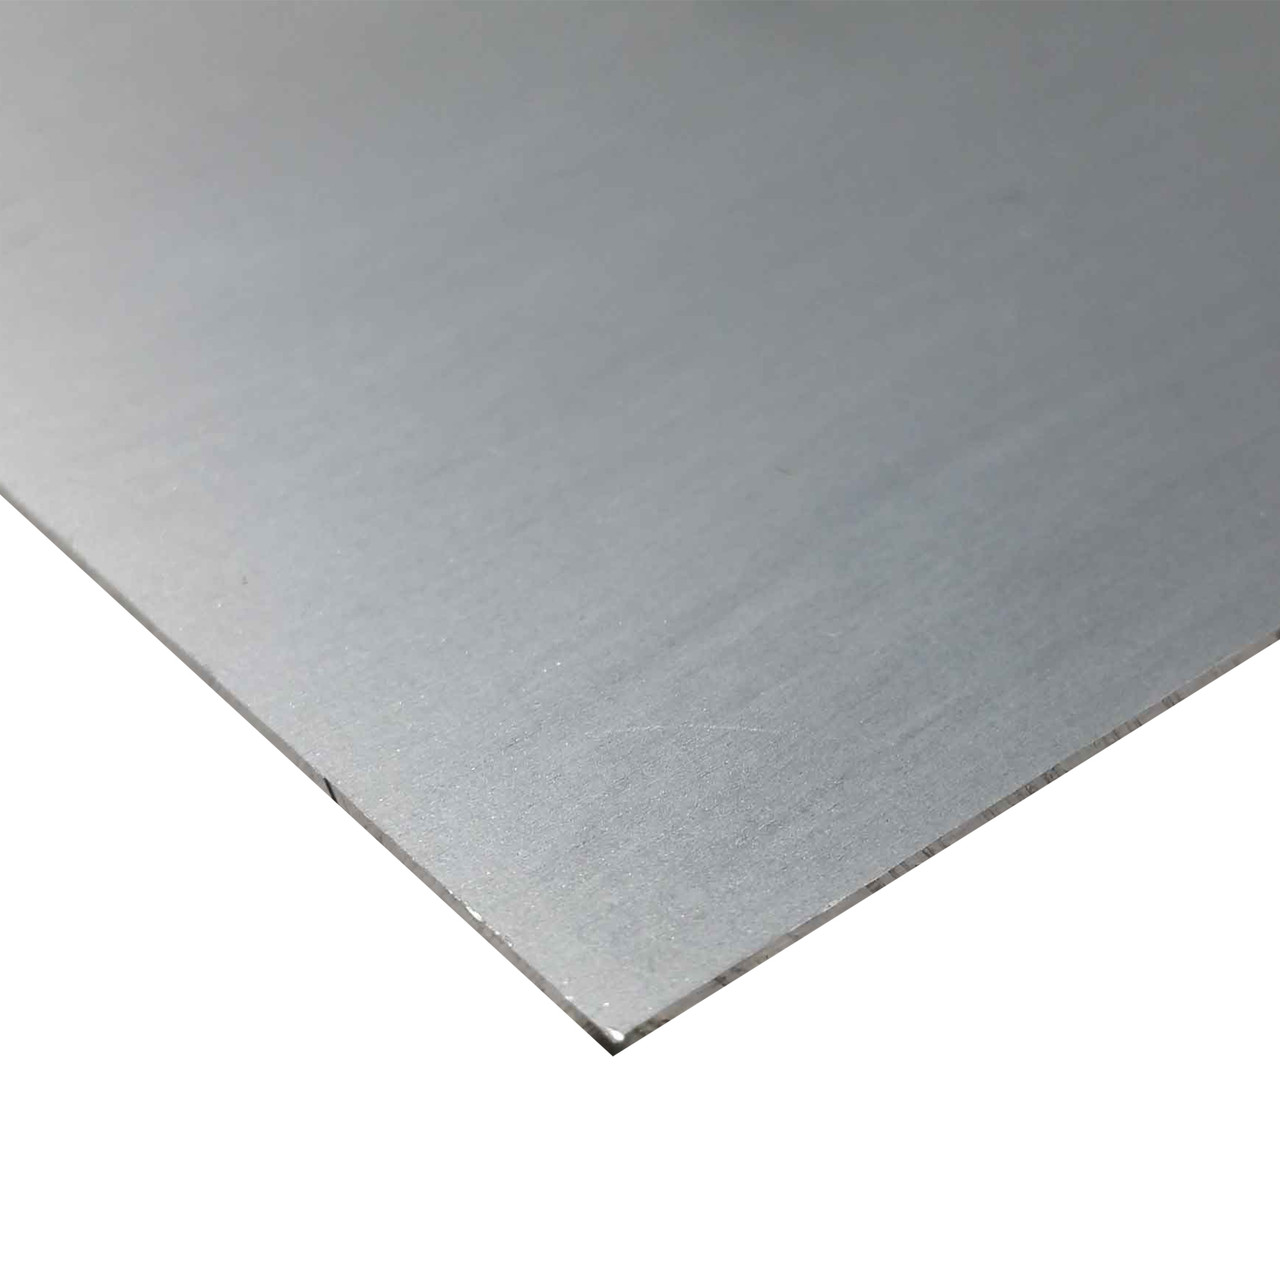 0.040" x 24" x 48", 7075-T6 Aluminum Sheet, Alclad